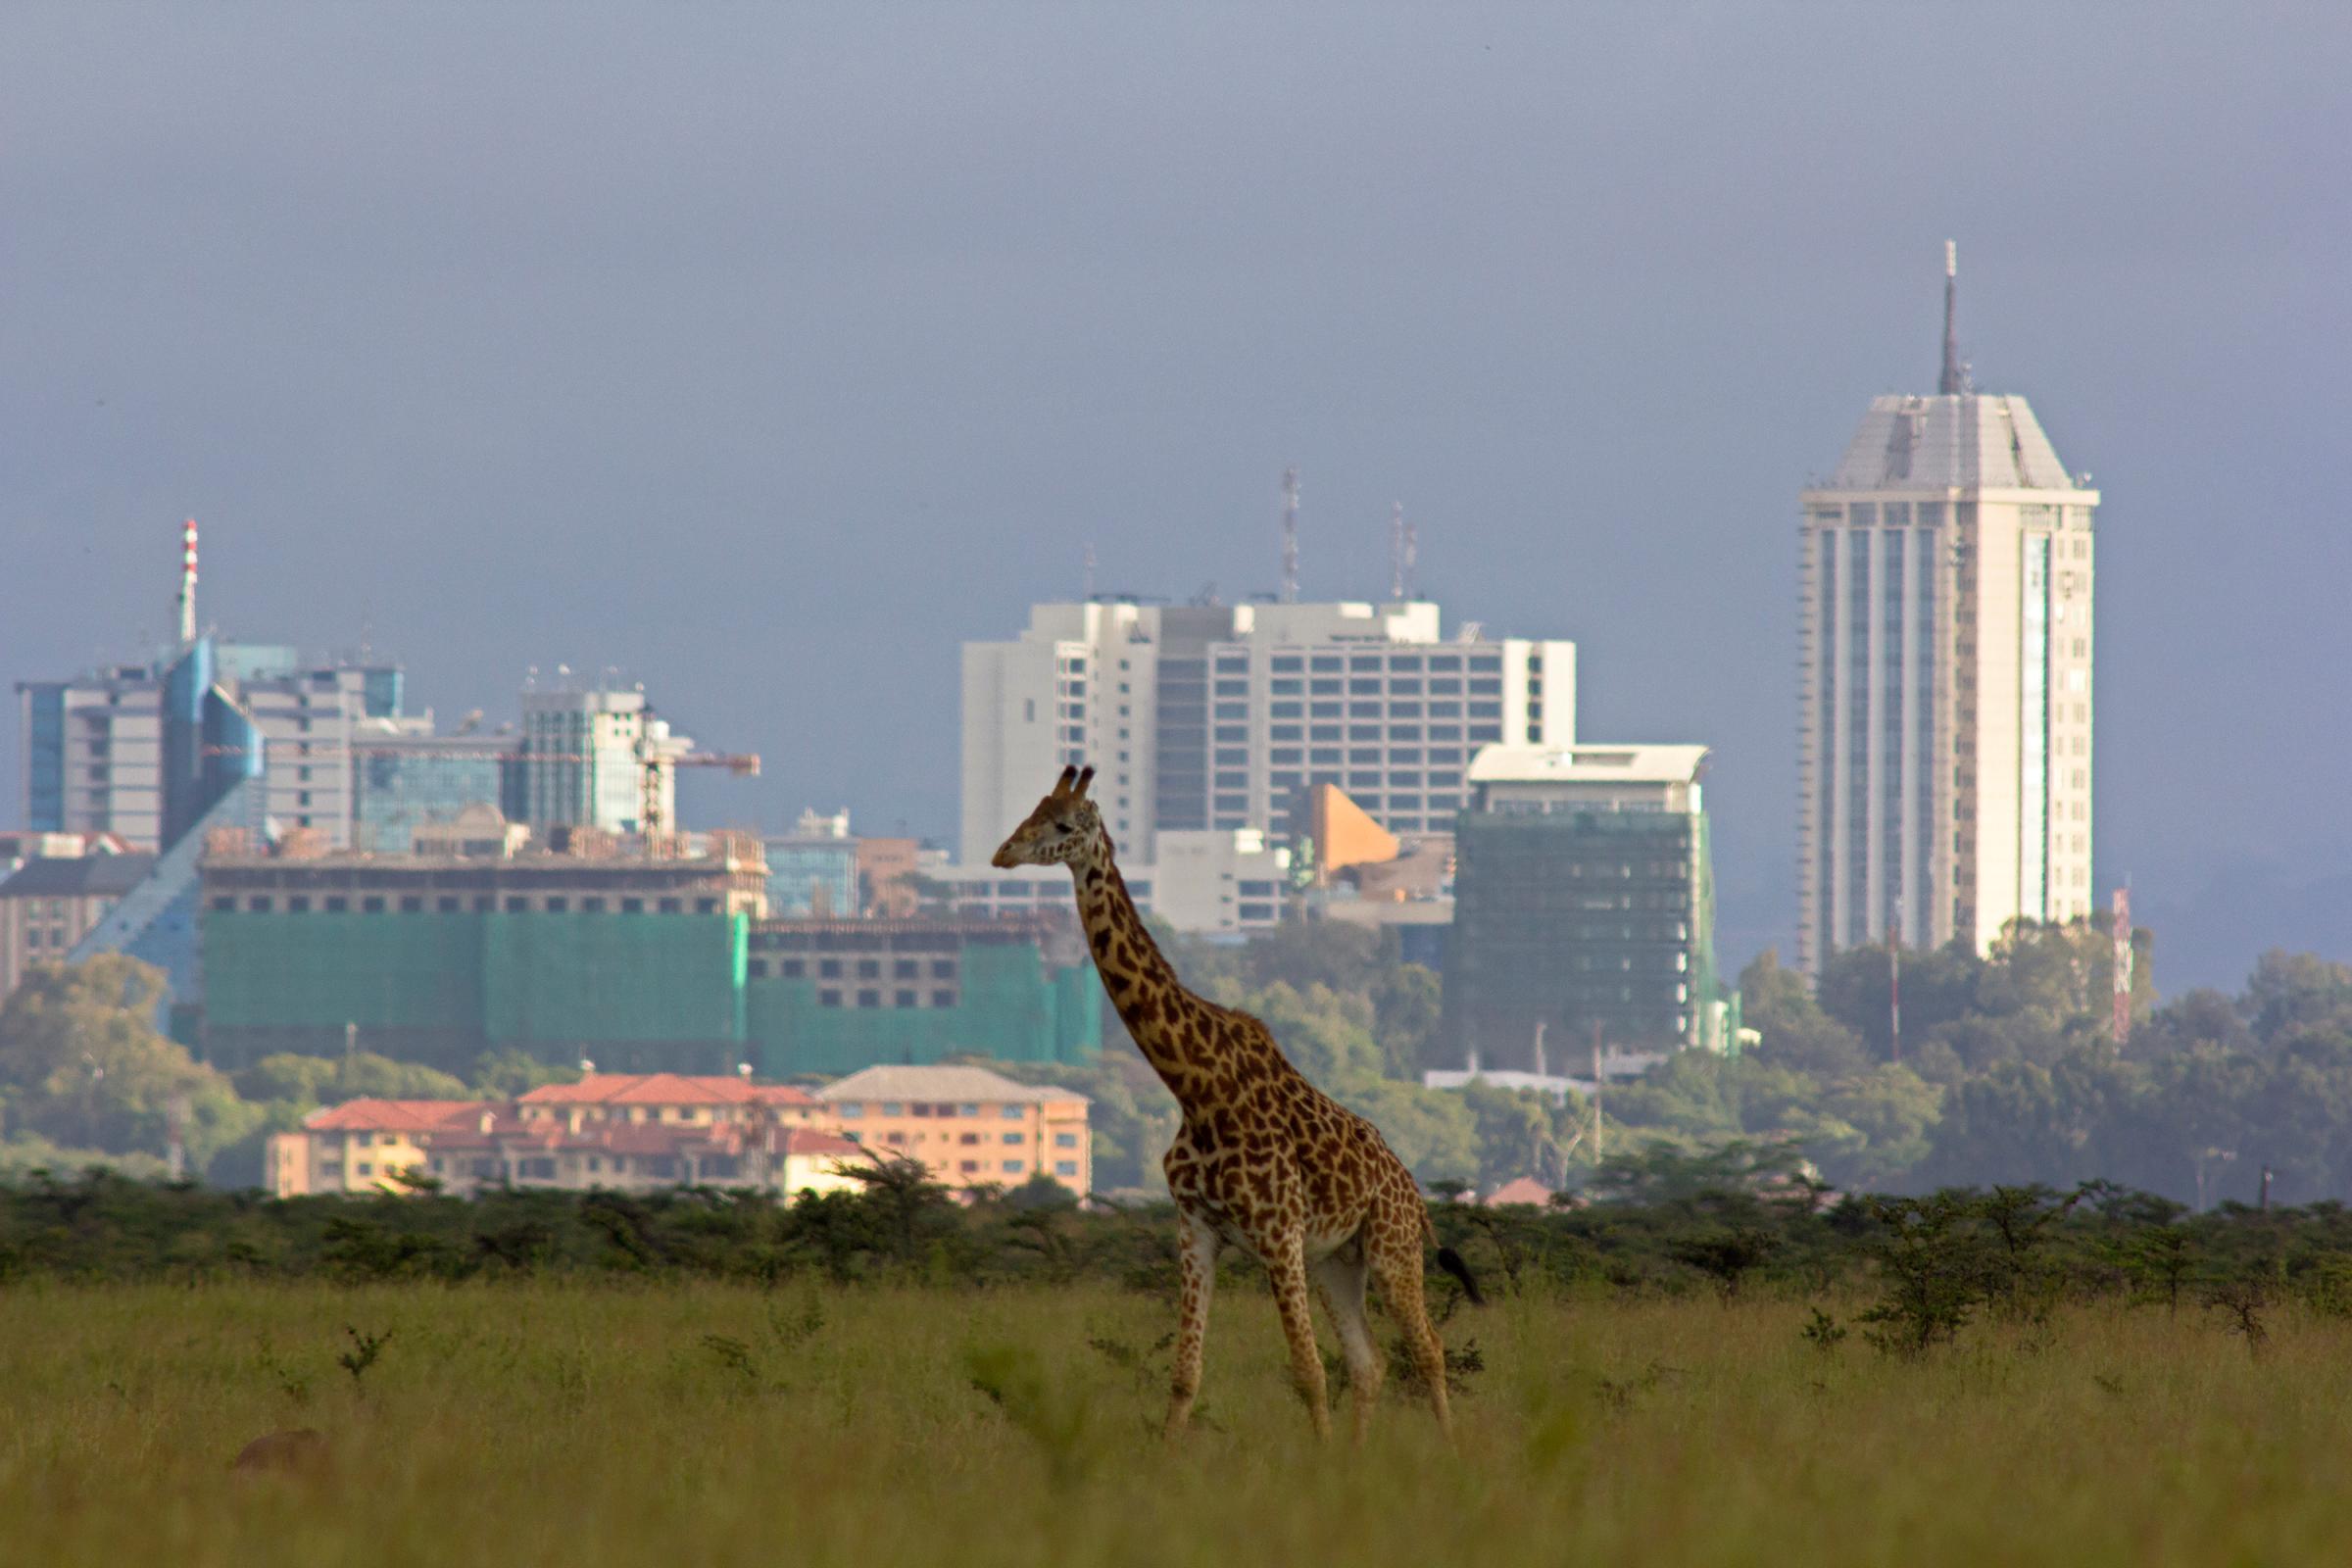 Giraffe against city skyline